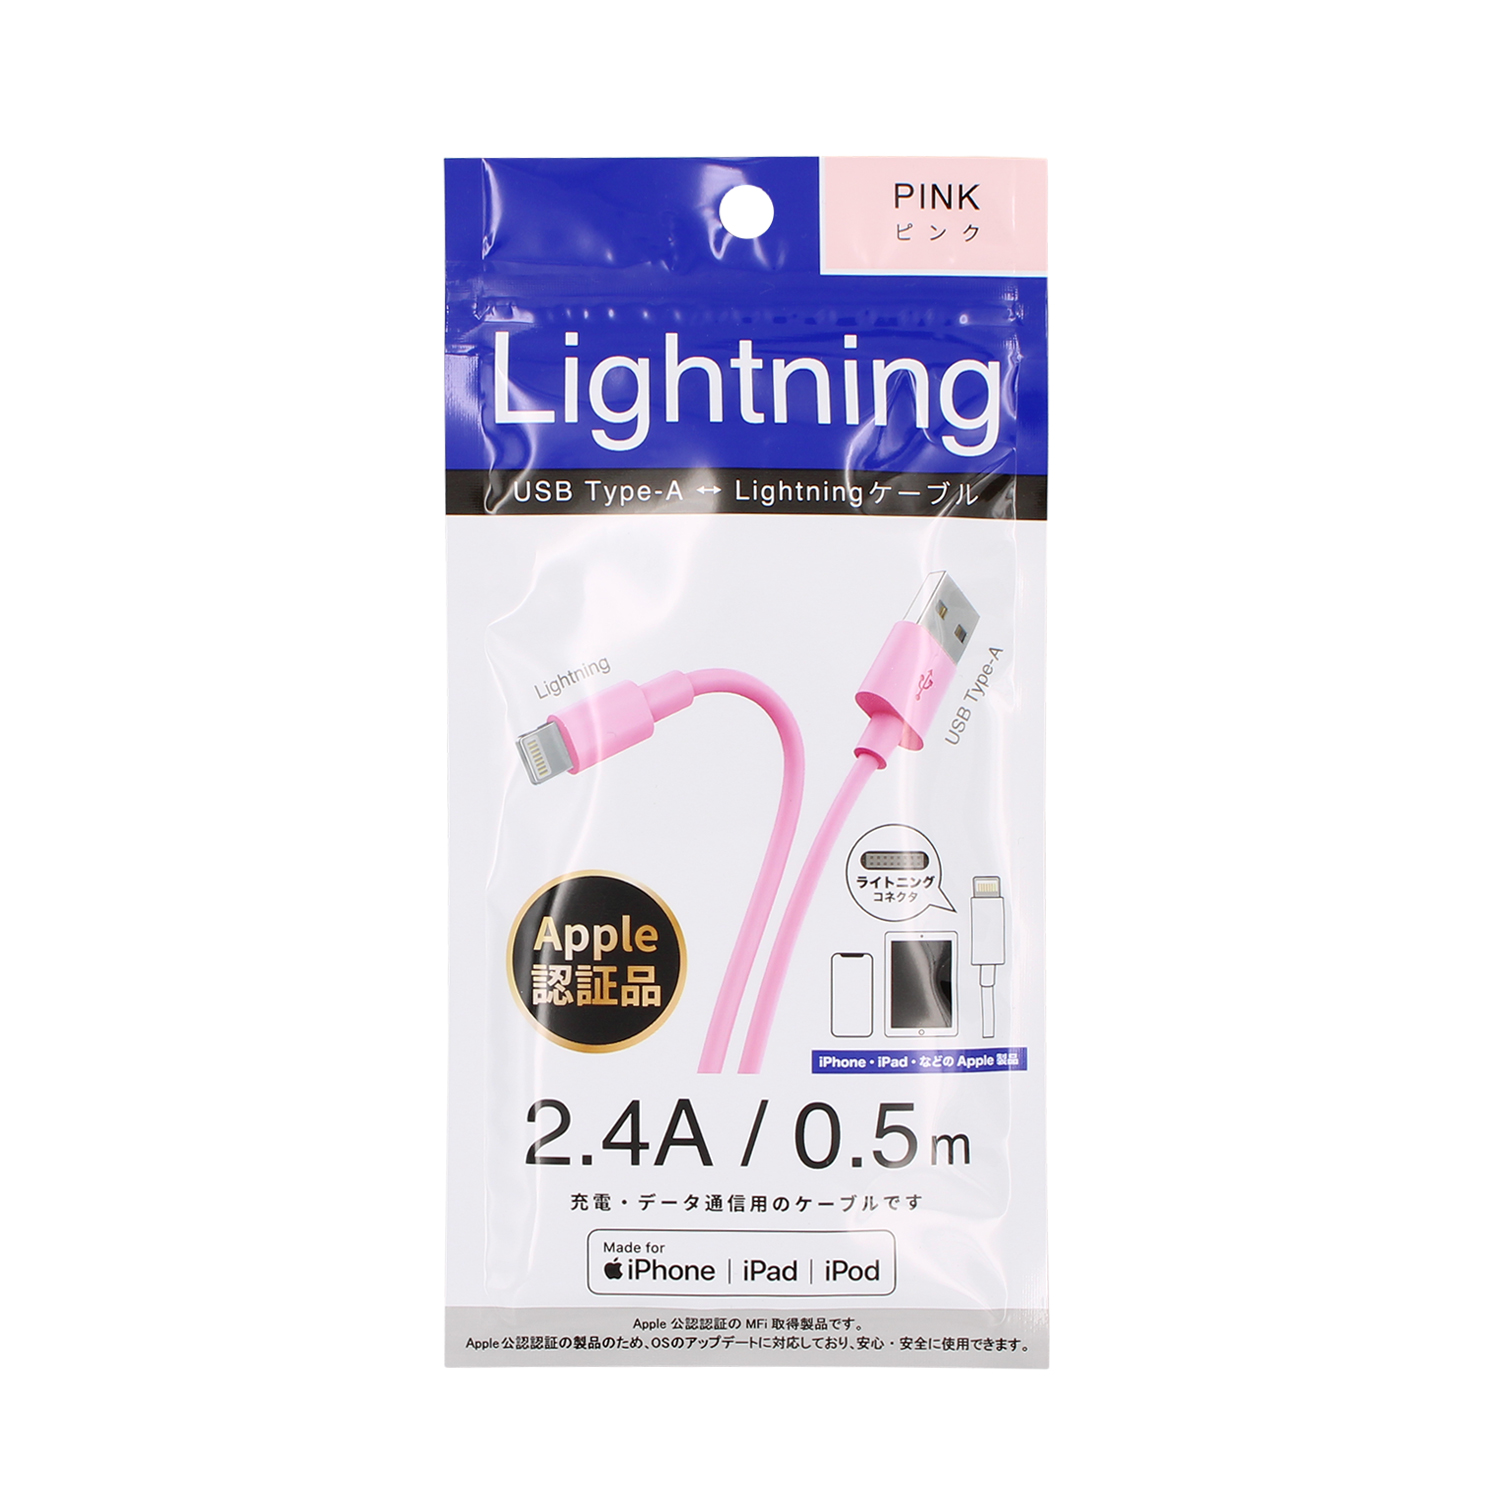 Lightningケーブル 0.5m | 藤本電業 F.S.C.事業部